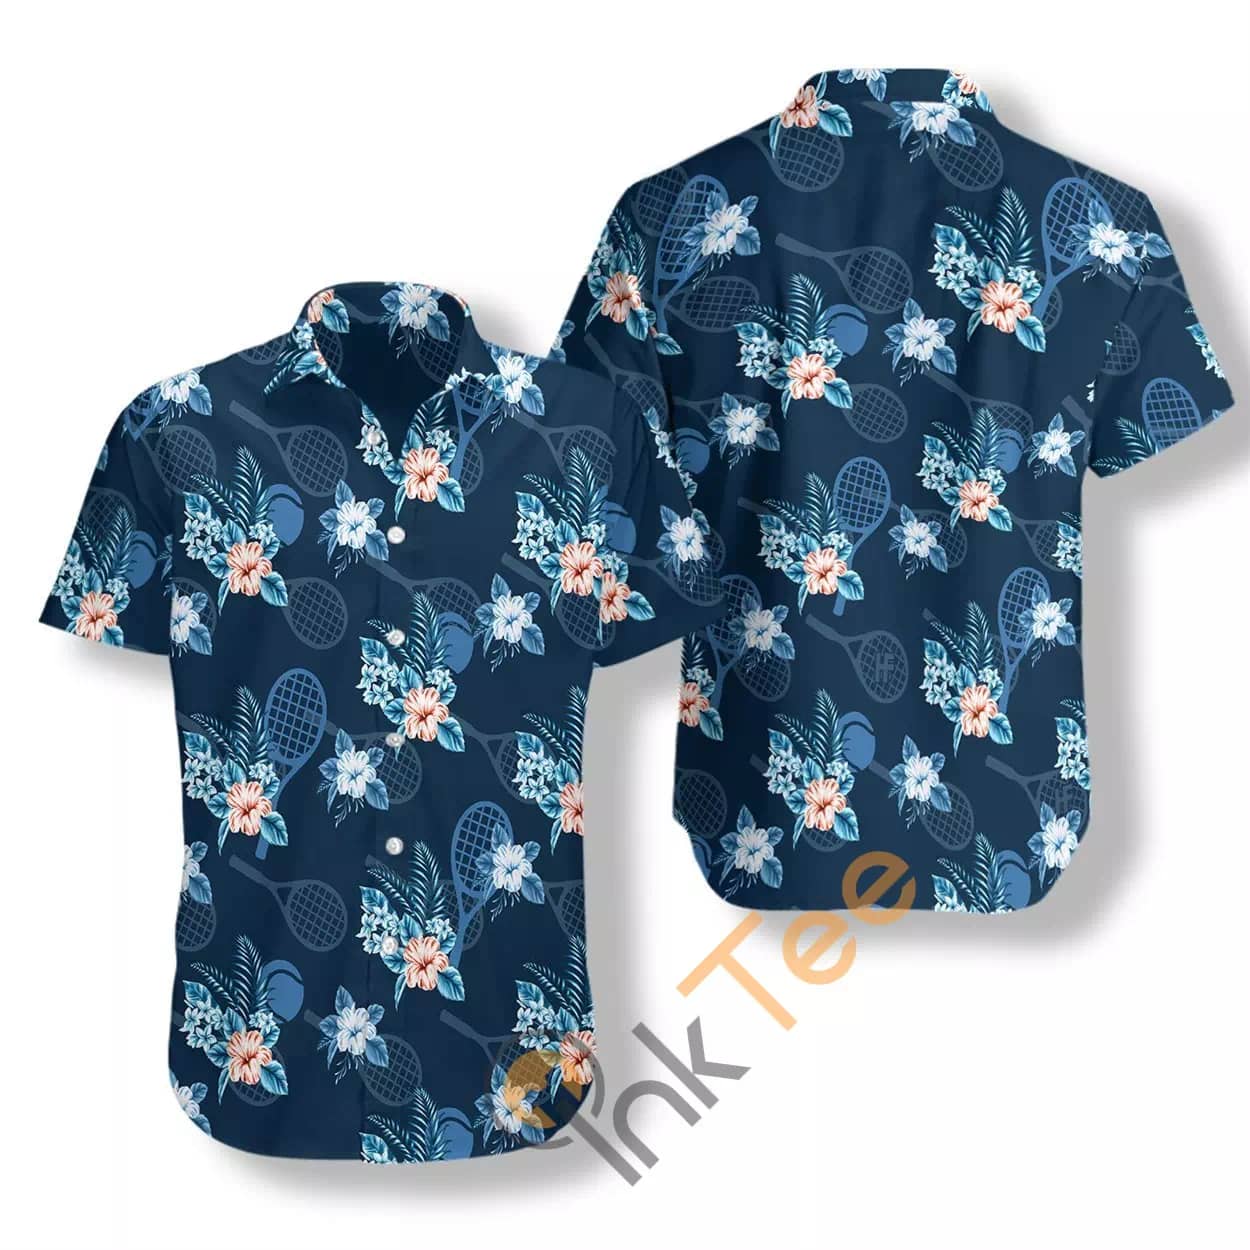 Tropical Tennis 3 N807 Hawaiian shirts